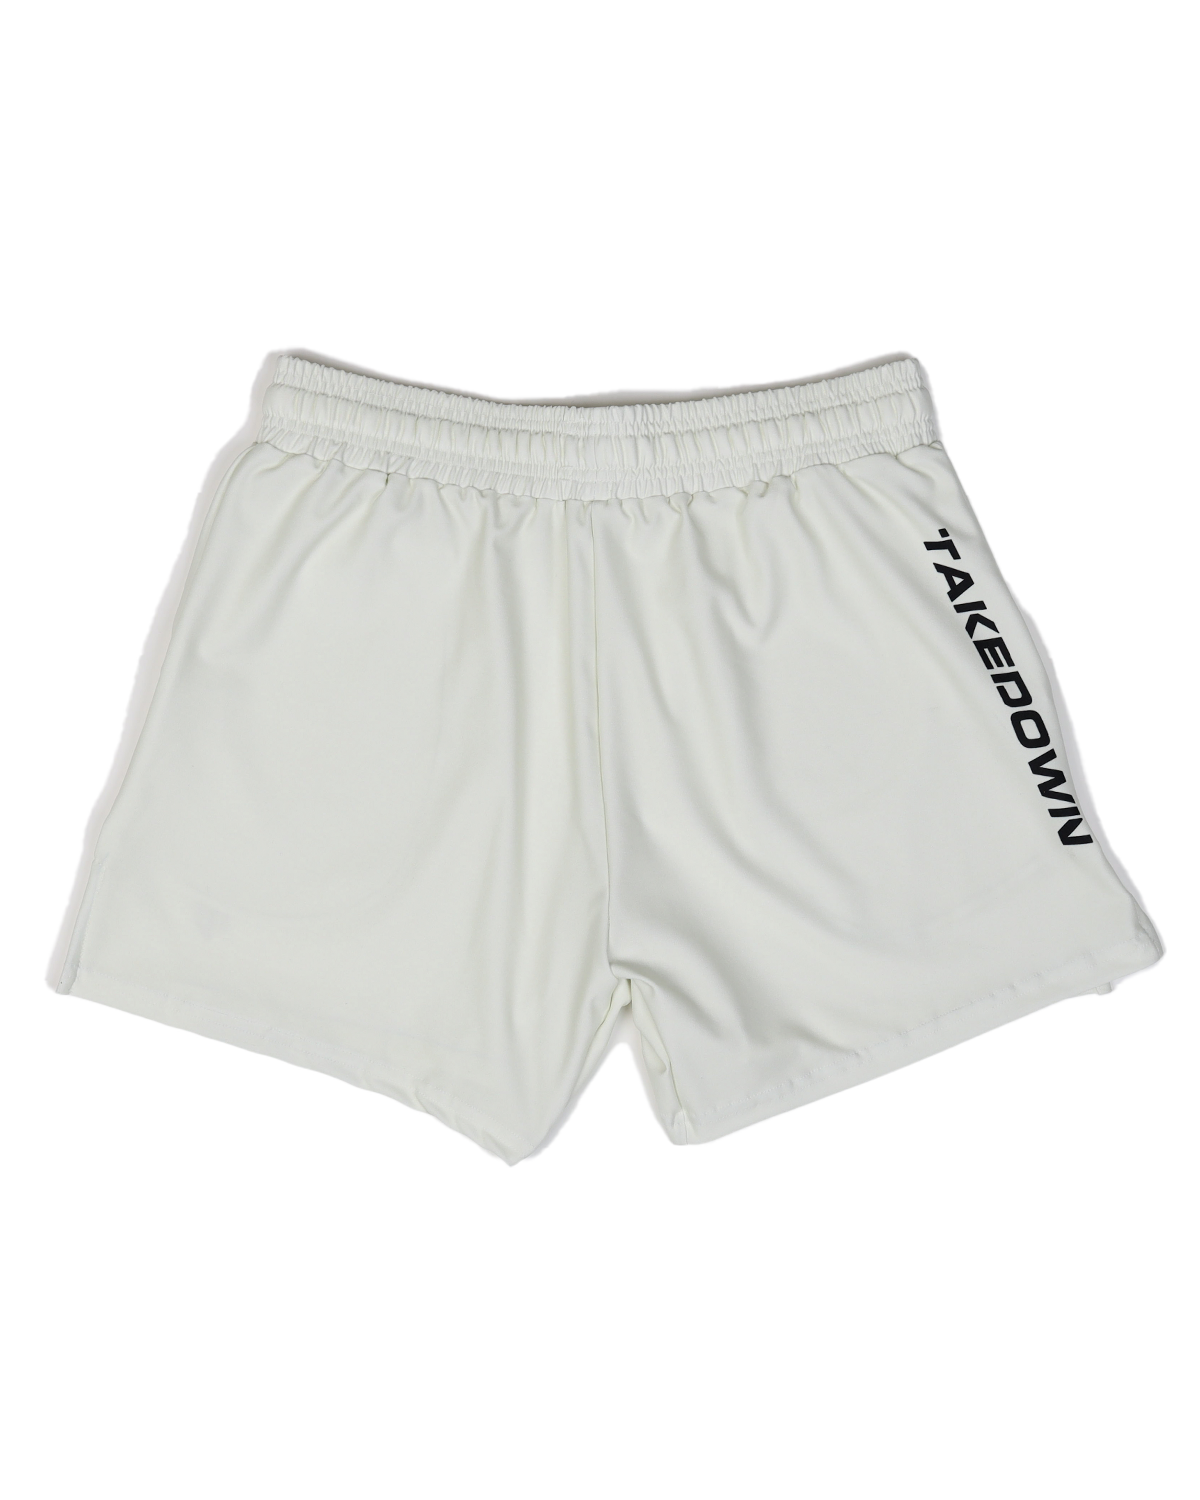 TD-GS-010 360° Custom Gym Shorts (5"&7“ Inseam)